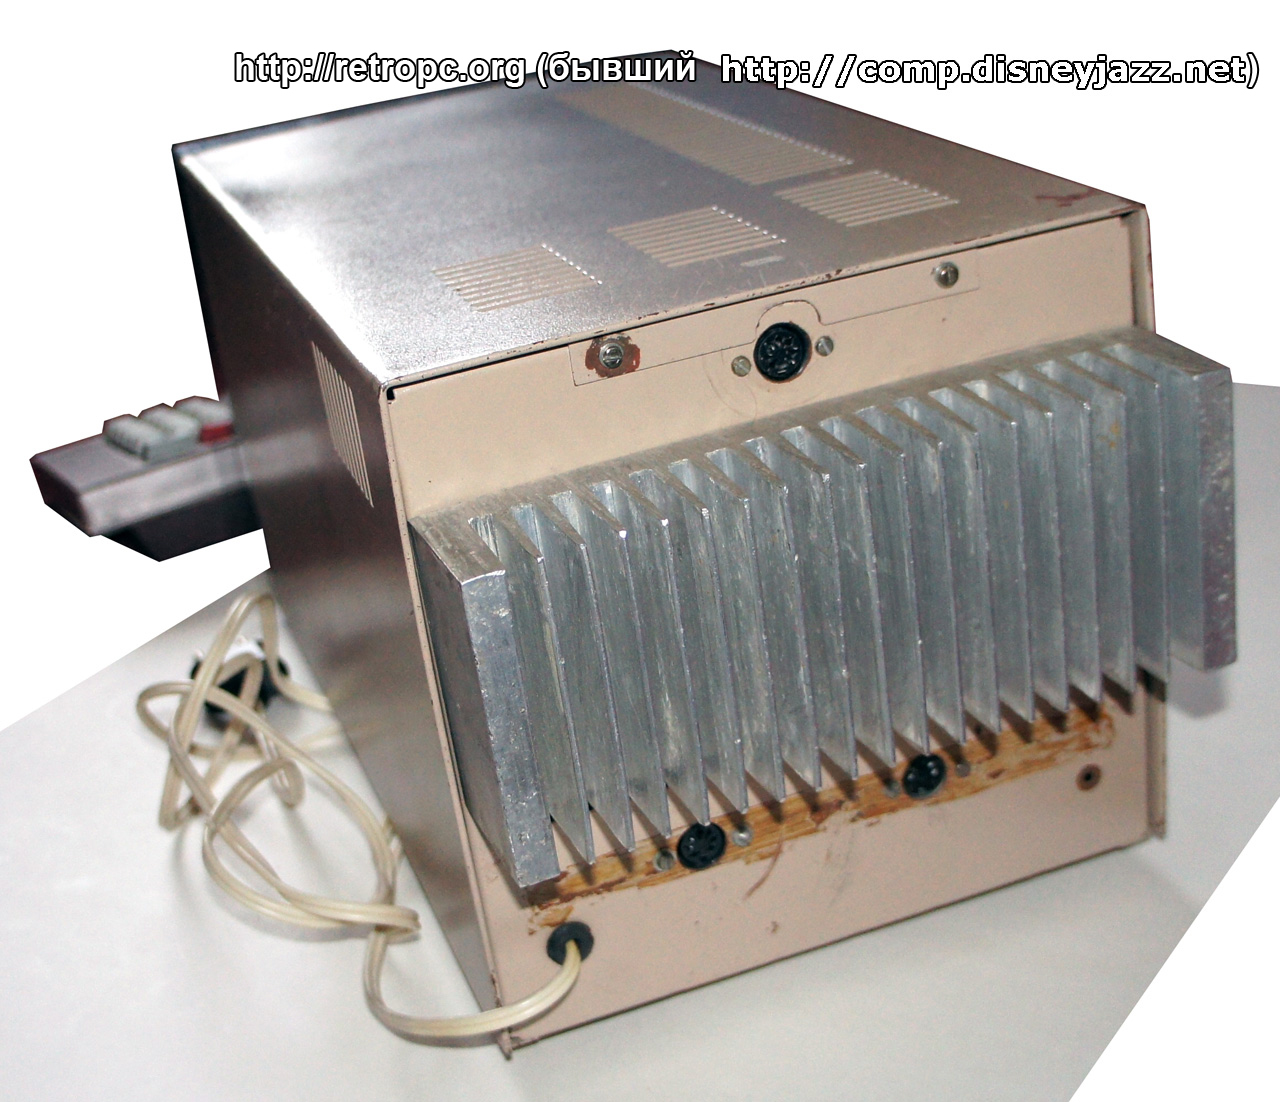 Компьютер ZX-Profi ver. 3-2 вид сзади на радиатор и выходы для звука, магнитофона и монитора.